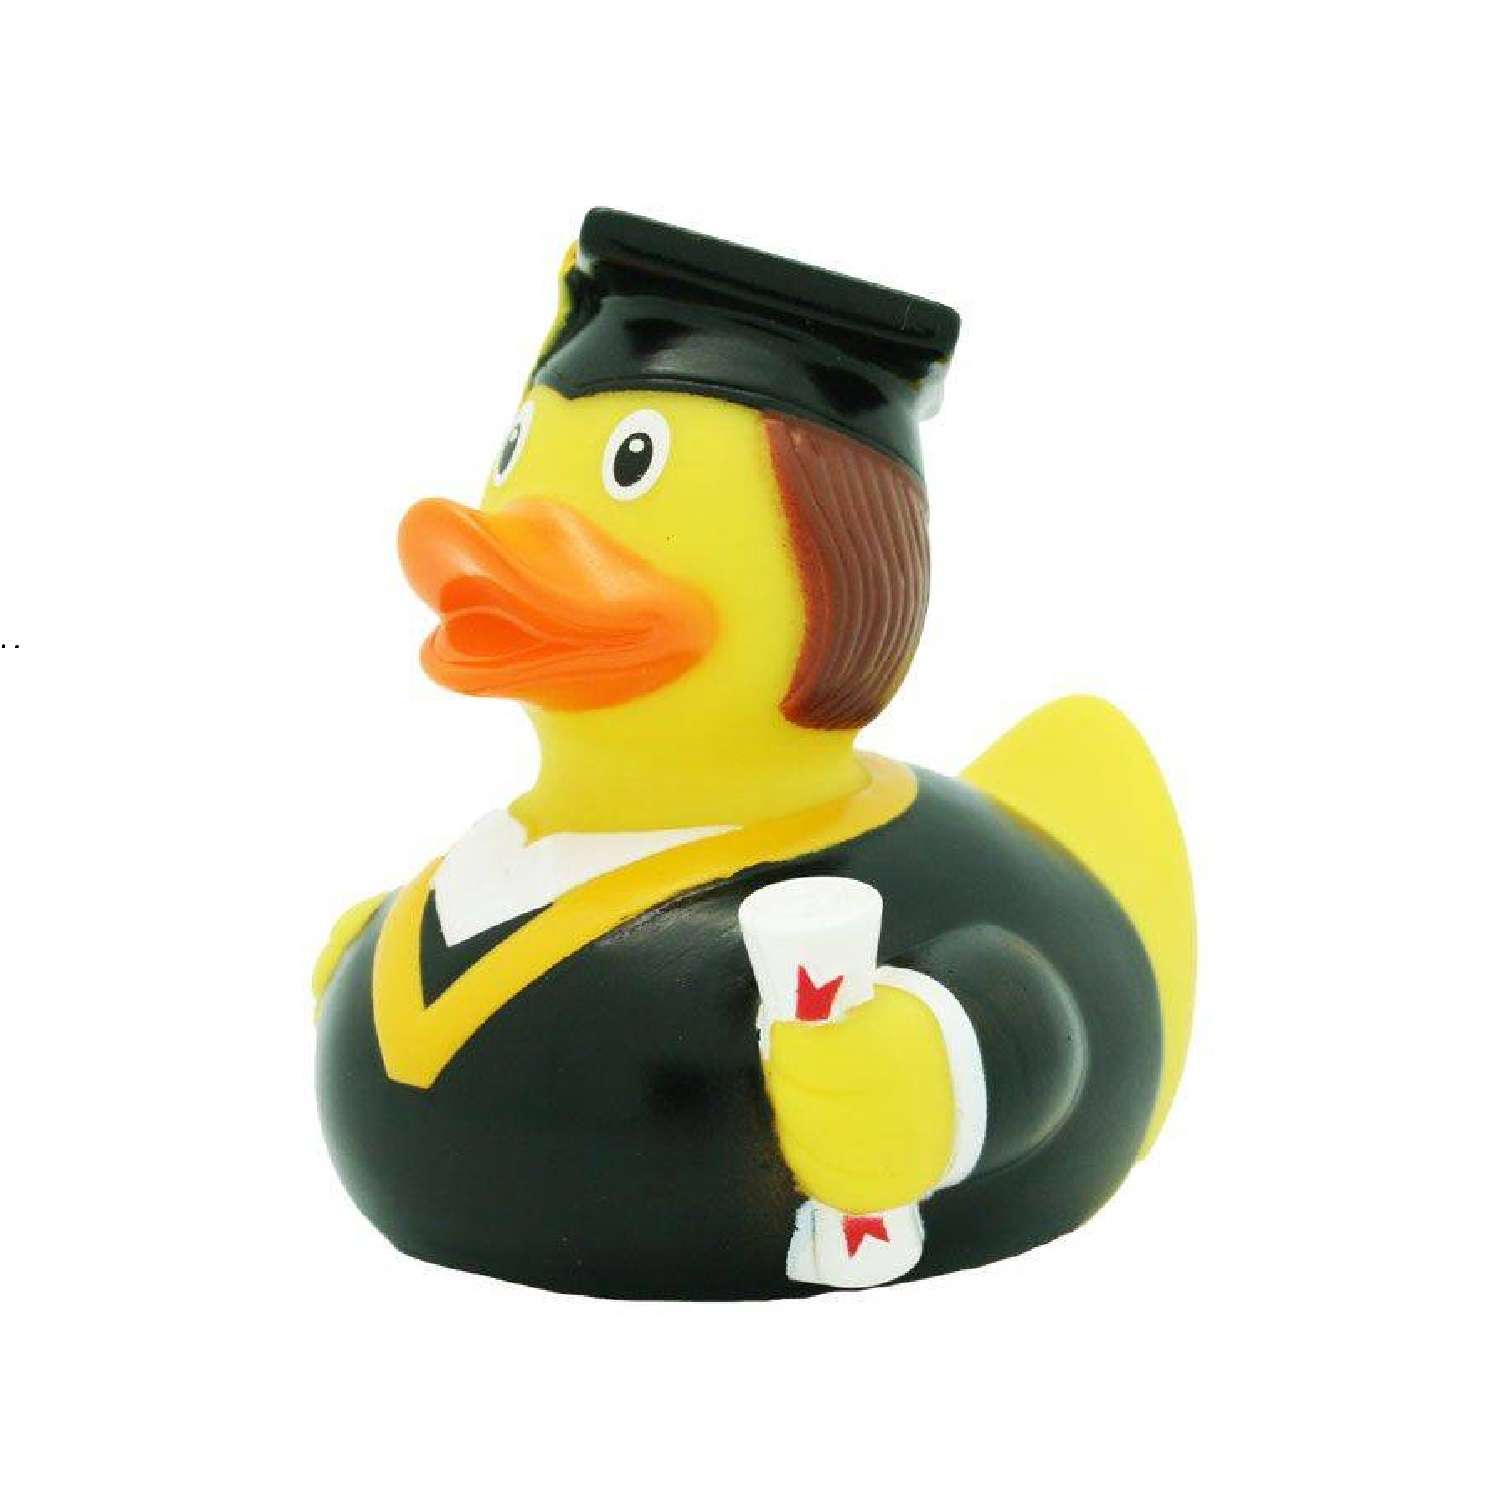 Игрушка Funny ducks для ванной Студент уточка 1887 - фото 2